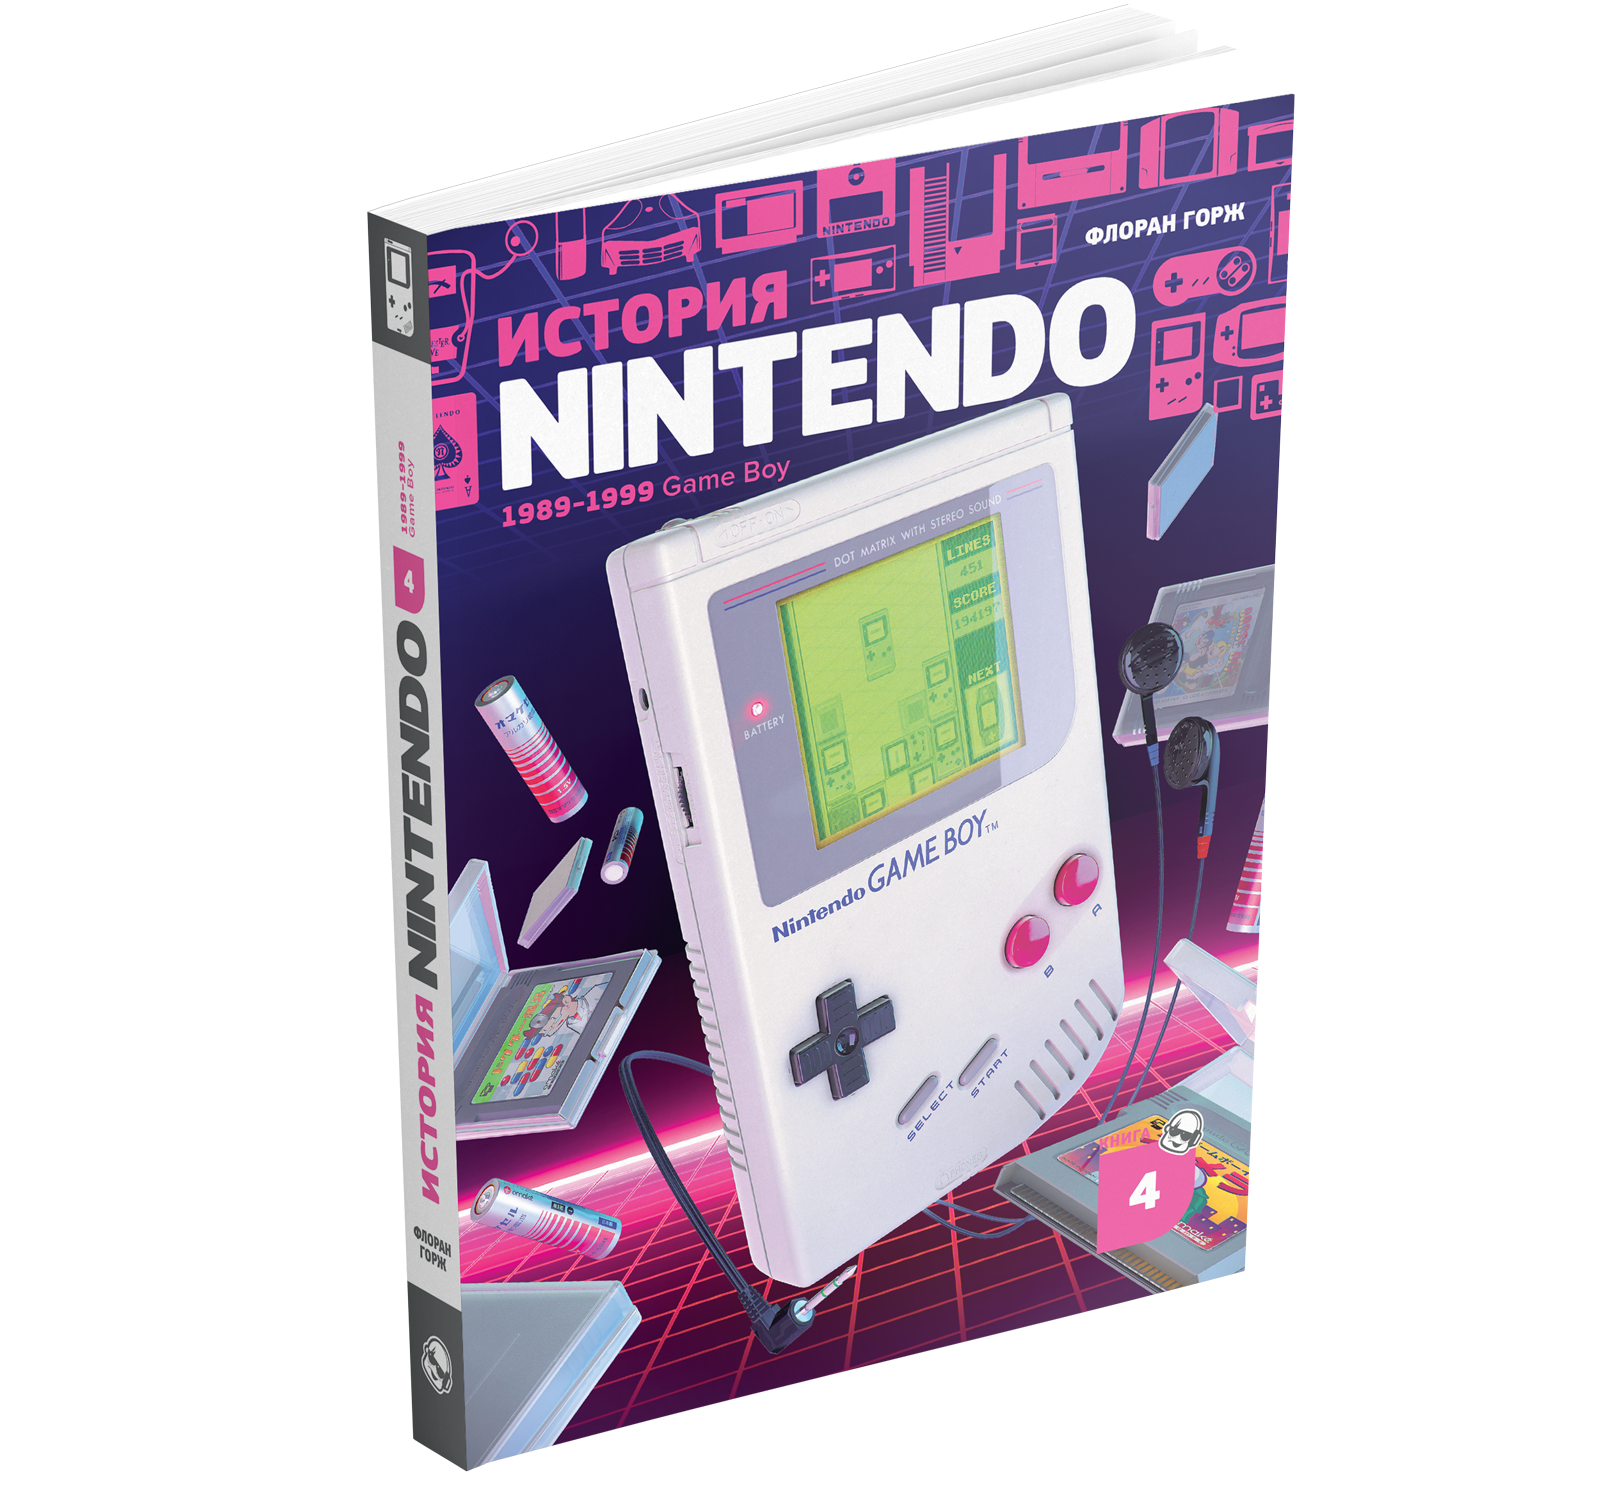 Nintendo книжка. История Nintendo книга. История Нинтендо. История Nintendo книга 4.